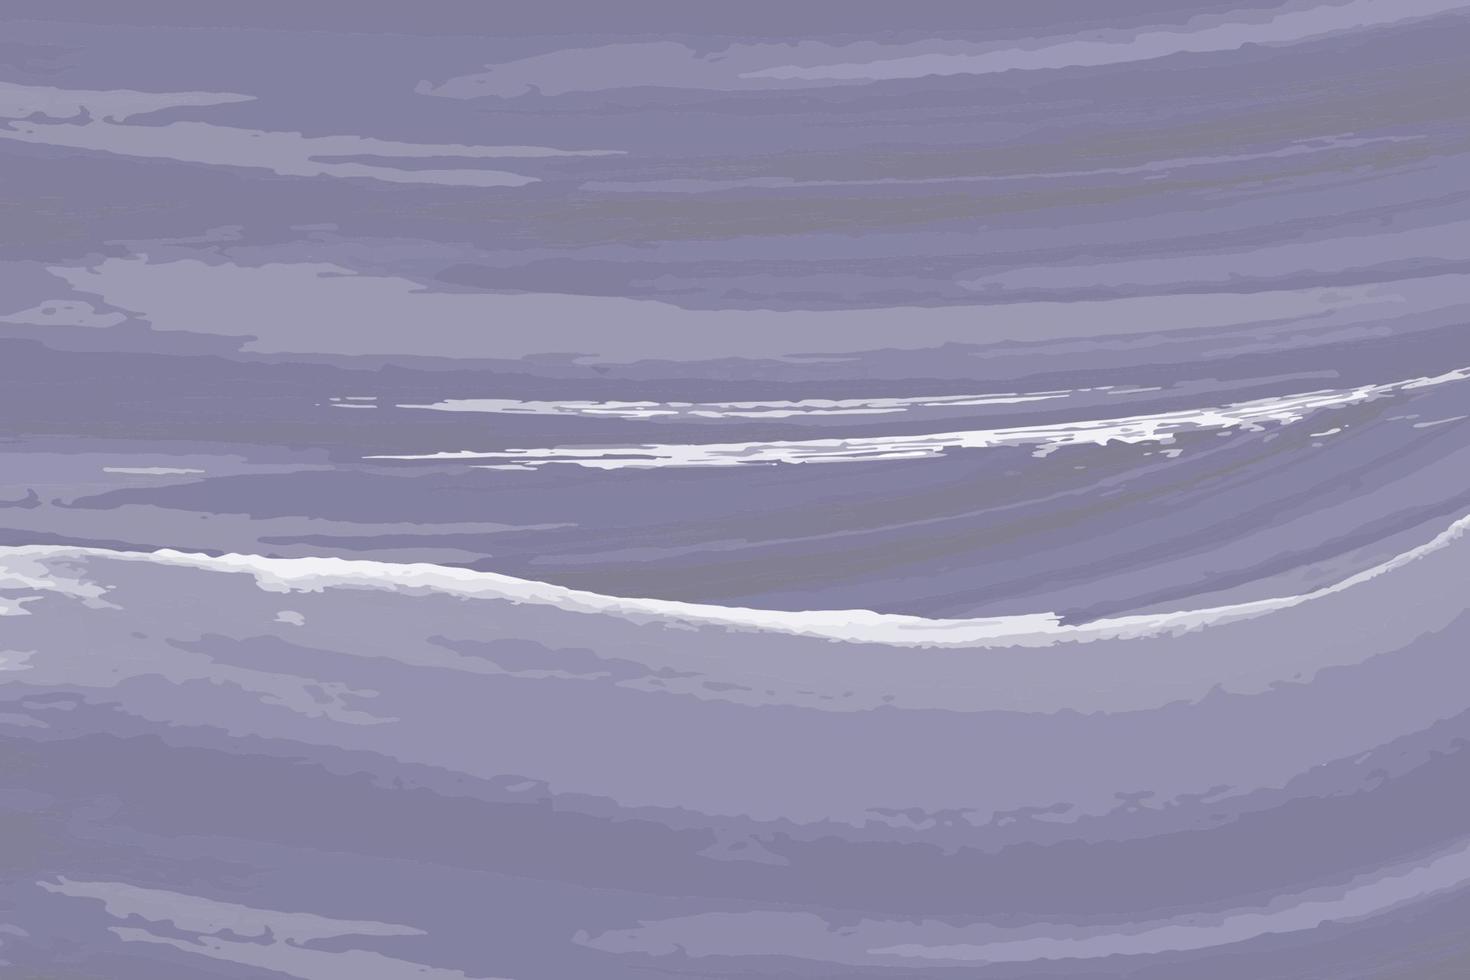 Aquarell Pastell Zeichenpapier Textur Vektor helles Banner, Druck. Aquarell abstrakte nasse handgezeichnete violette blaue grüne gelbe Farbflüssigkeitskarte für Gruß, Plakat, Design, Kunsttapete